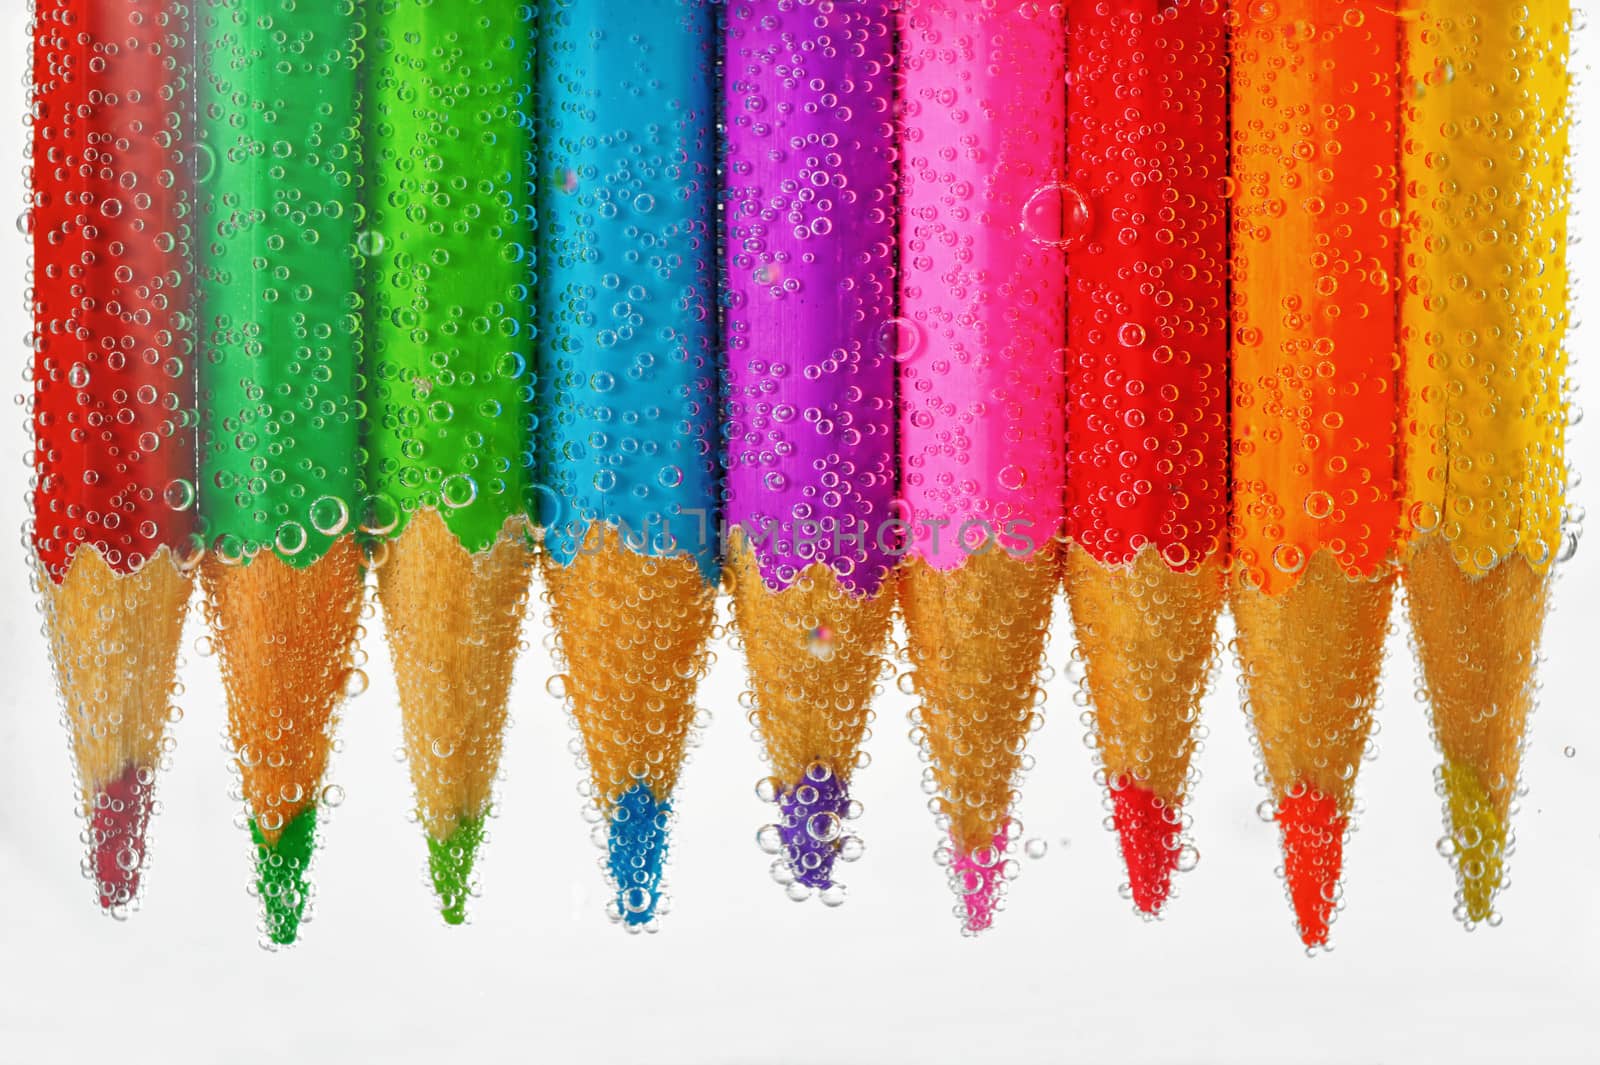 colored pencils sunken in water